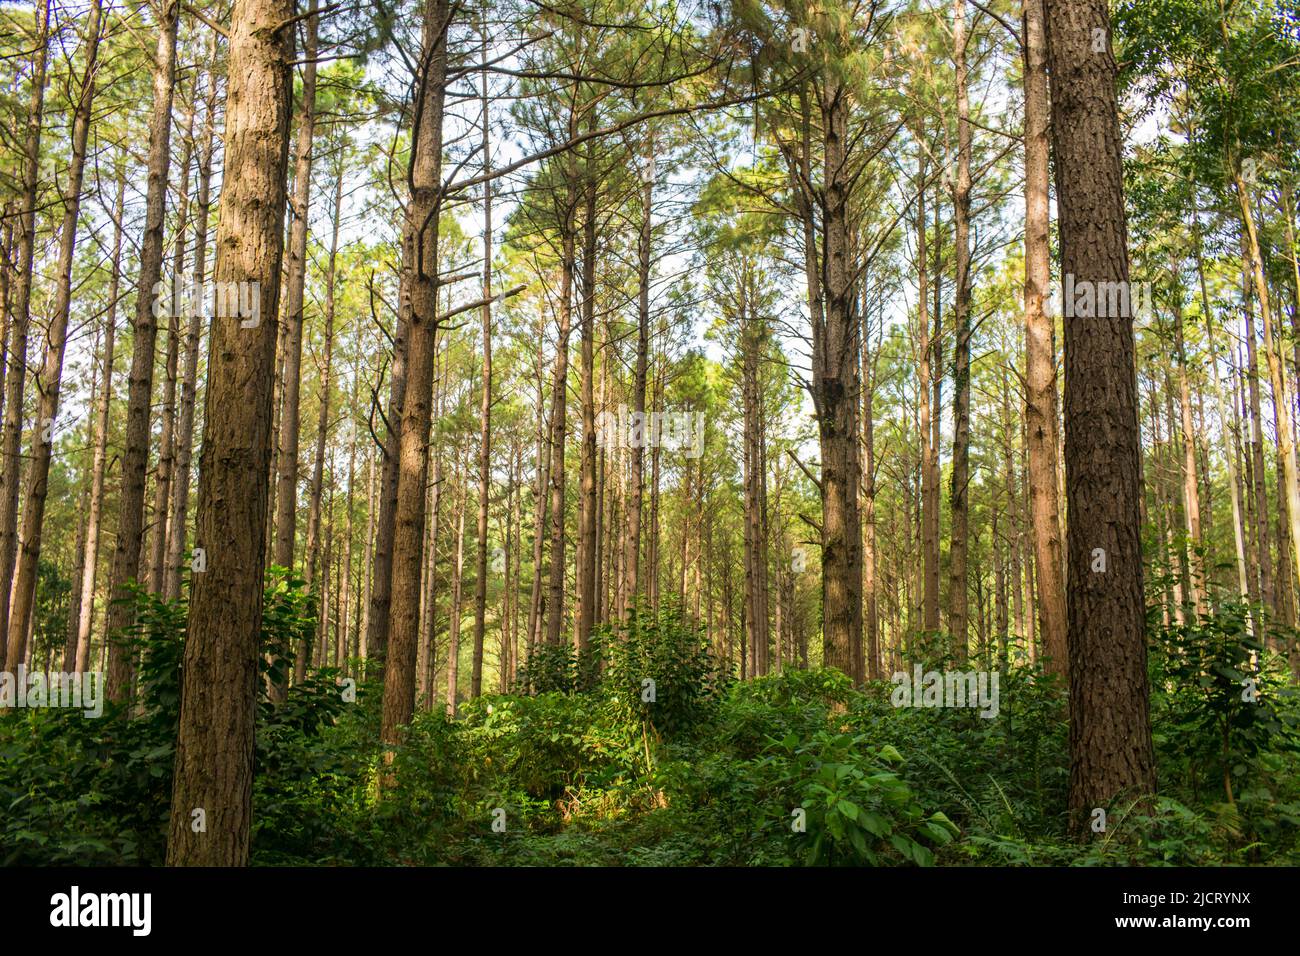 Pine tree (Pinus Elliottii) plantation in Sao Francisco de Paula (Carapina region) - Brazil Stock Photo